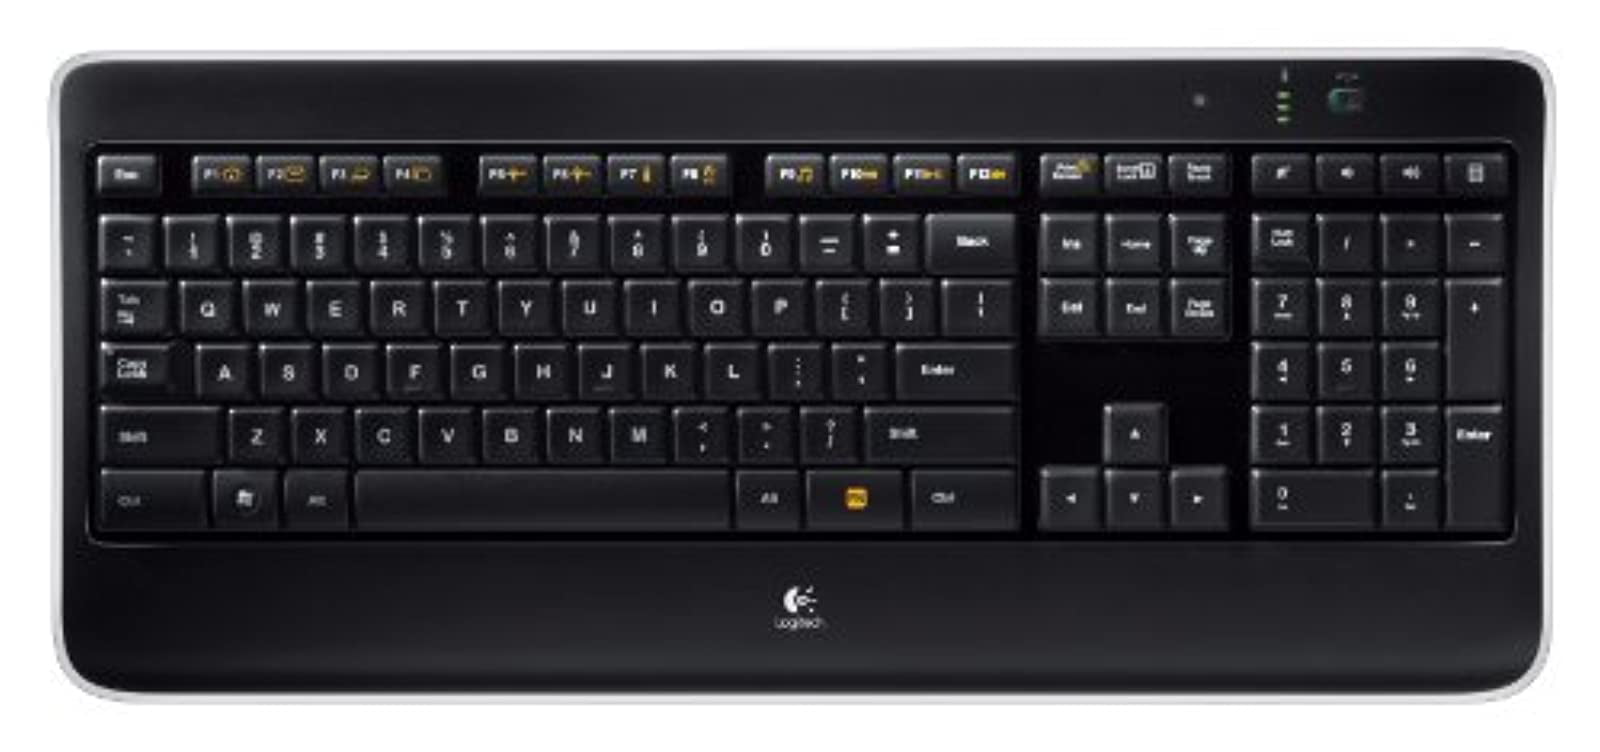 Logitech MK530 Wireless USB Keyboard & Laser Mouse Combo 920-008002 Black 